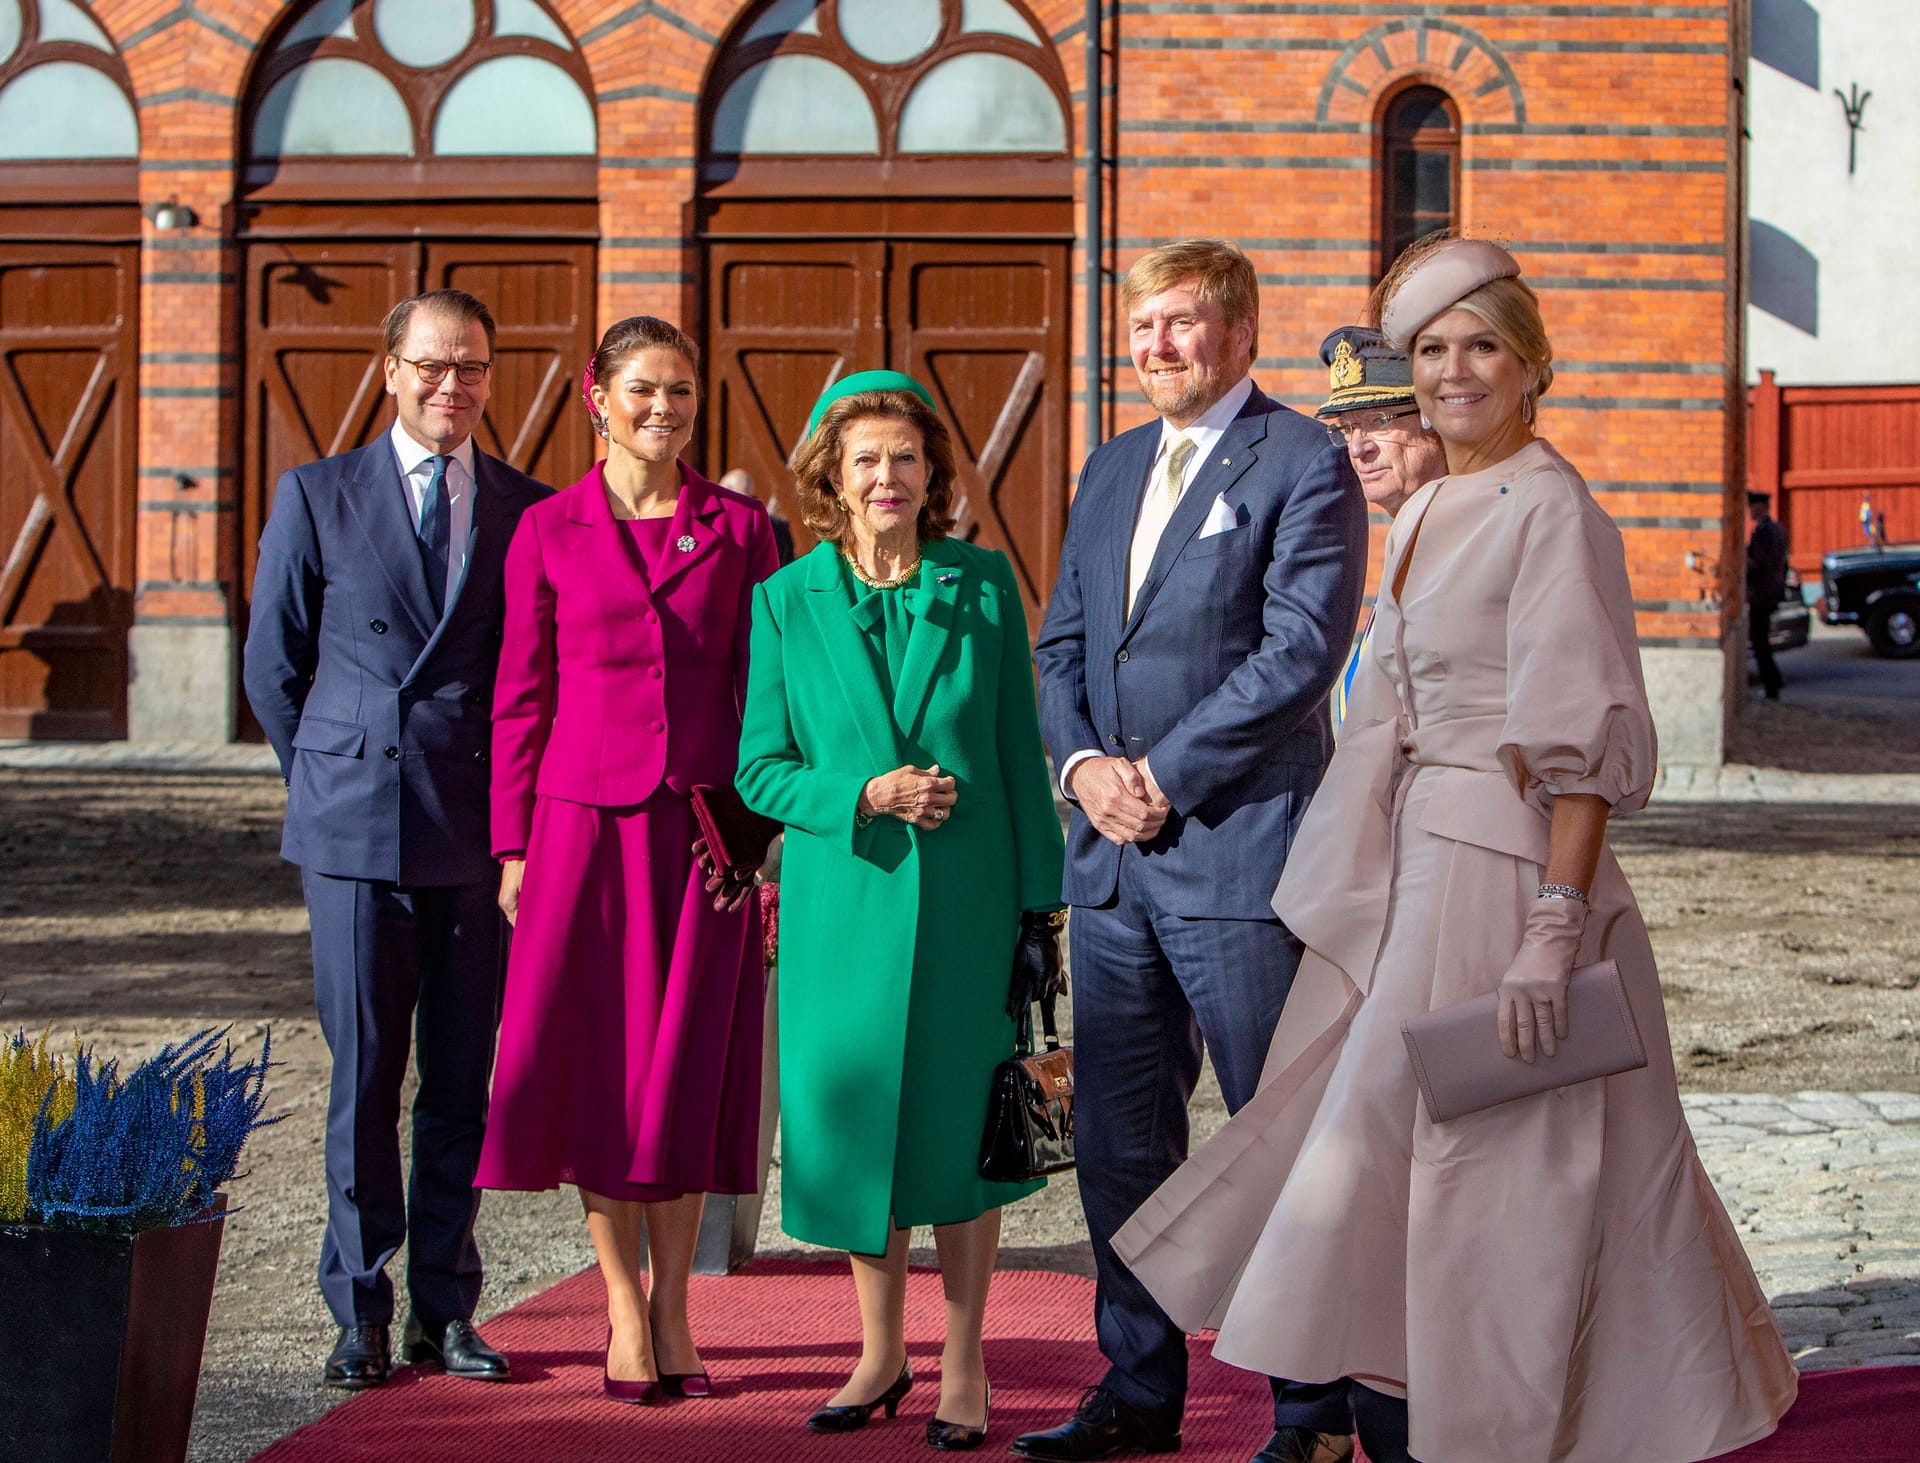 Vor dem königlichen Stall in Stockholm zeigten sich die Royals aus Schweden noch einmal gemeinsam mit dem Besuch aus den Niederlanden.